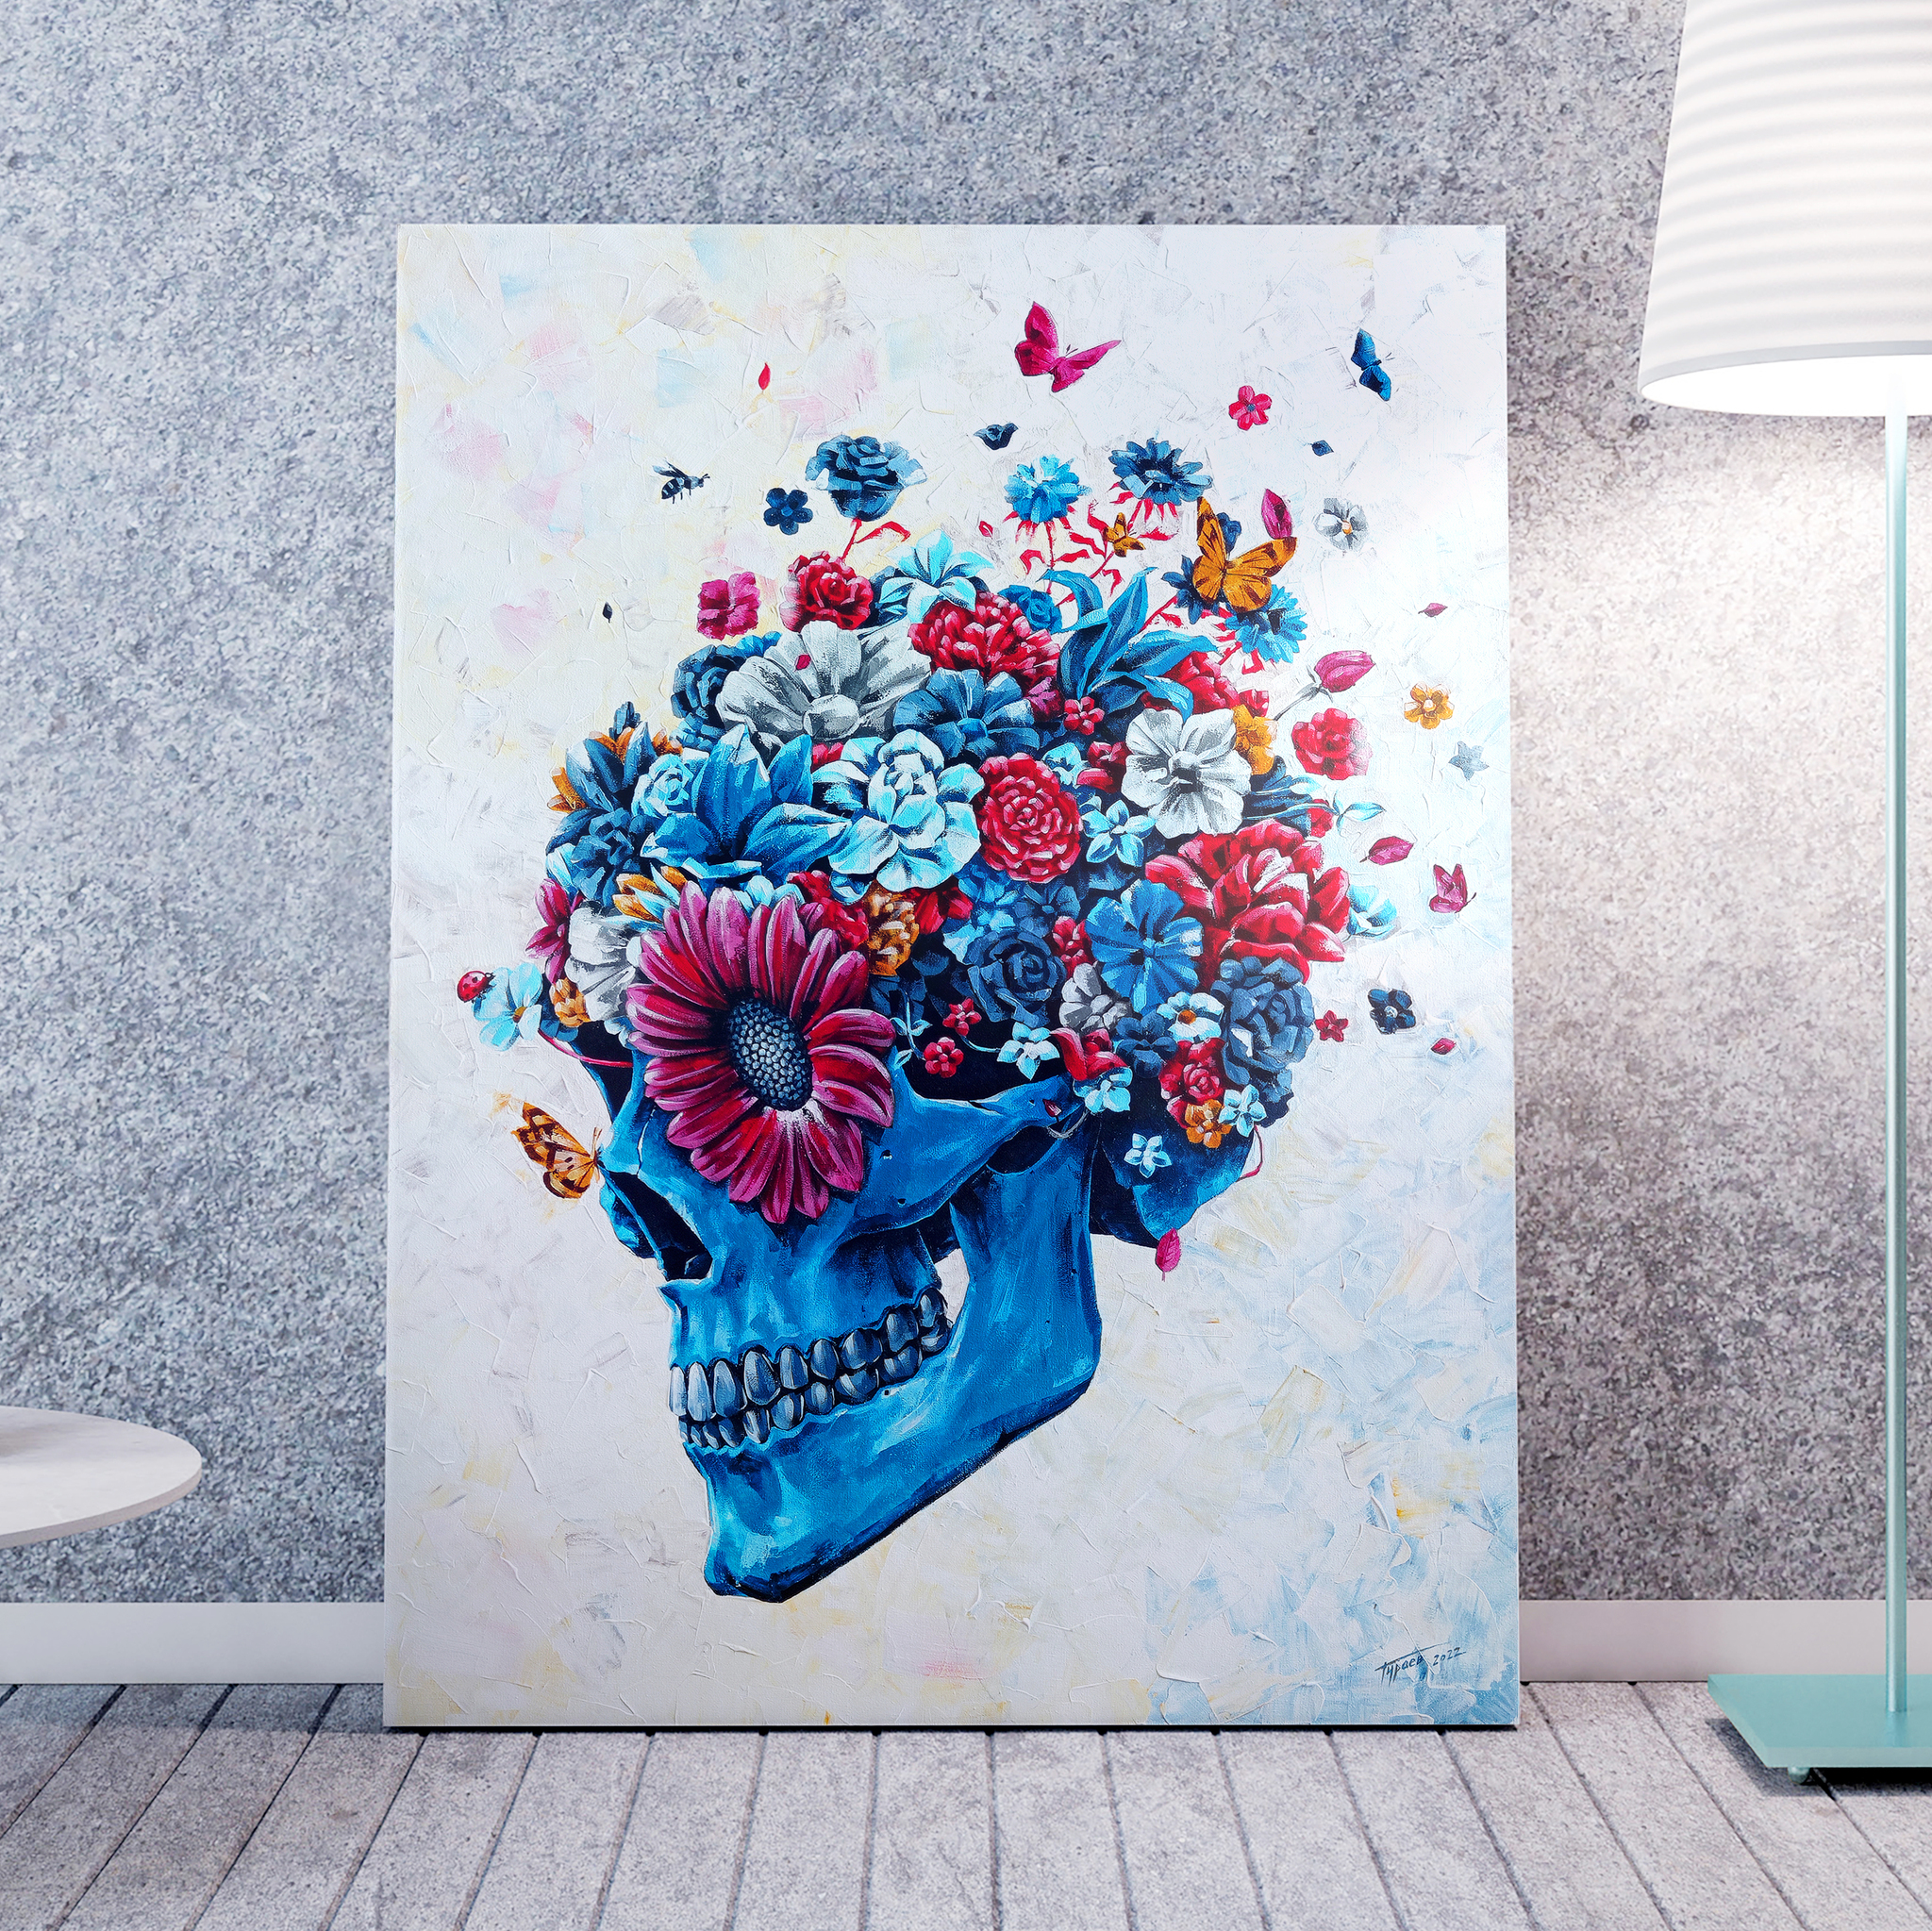 Картина «Череп с цветами». Холст, акрил, 120х90 см | Пикабу